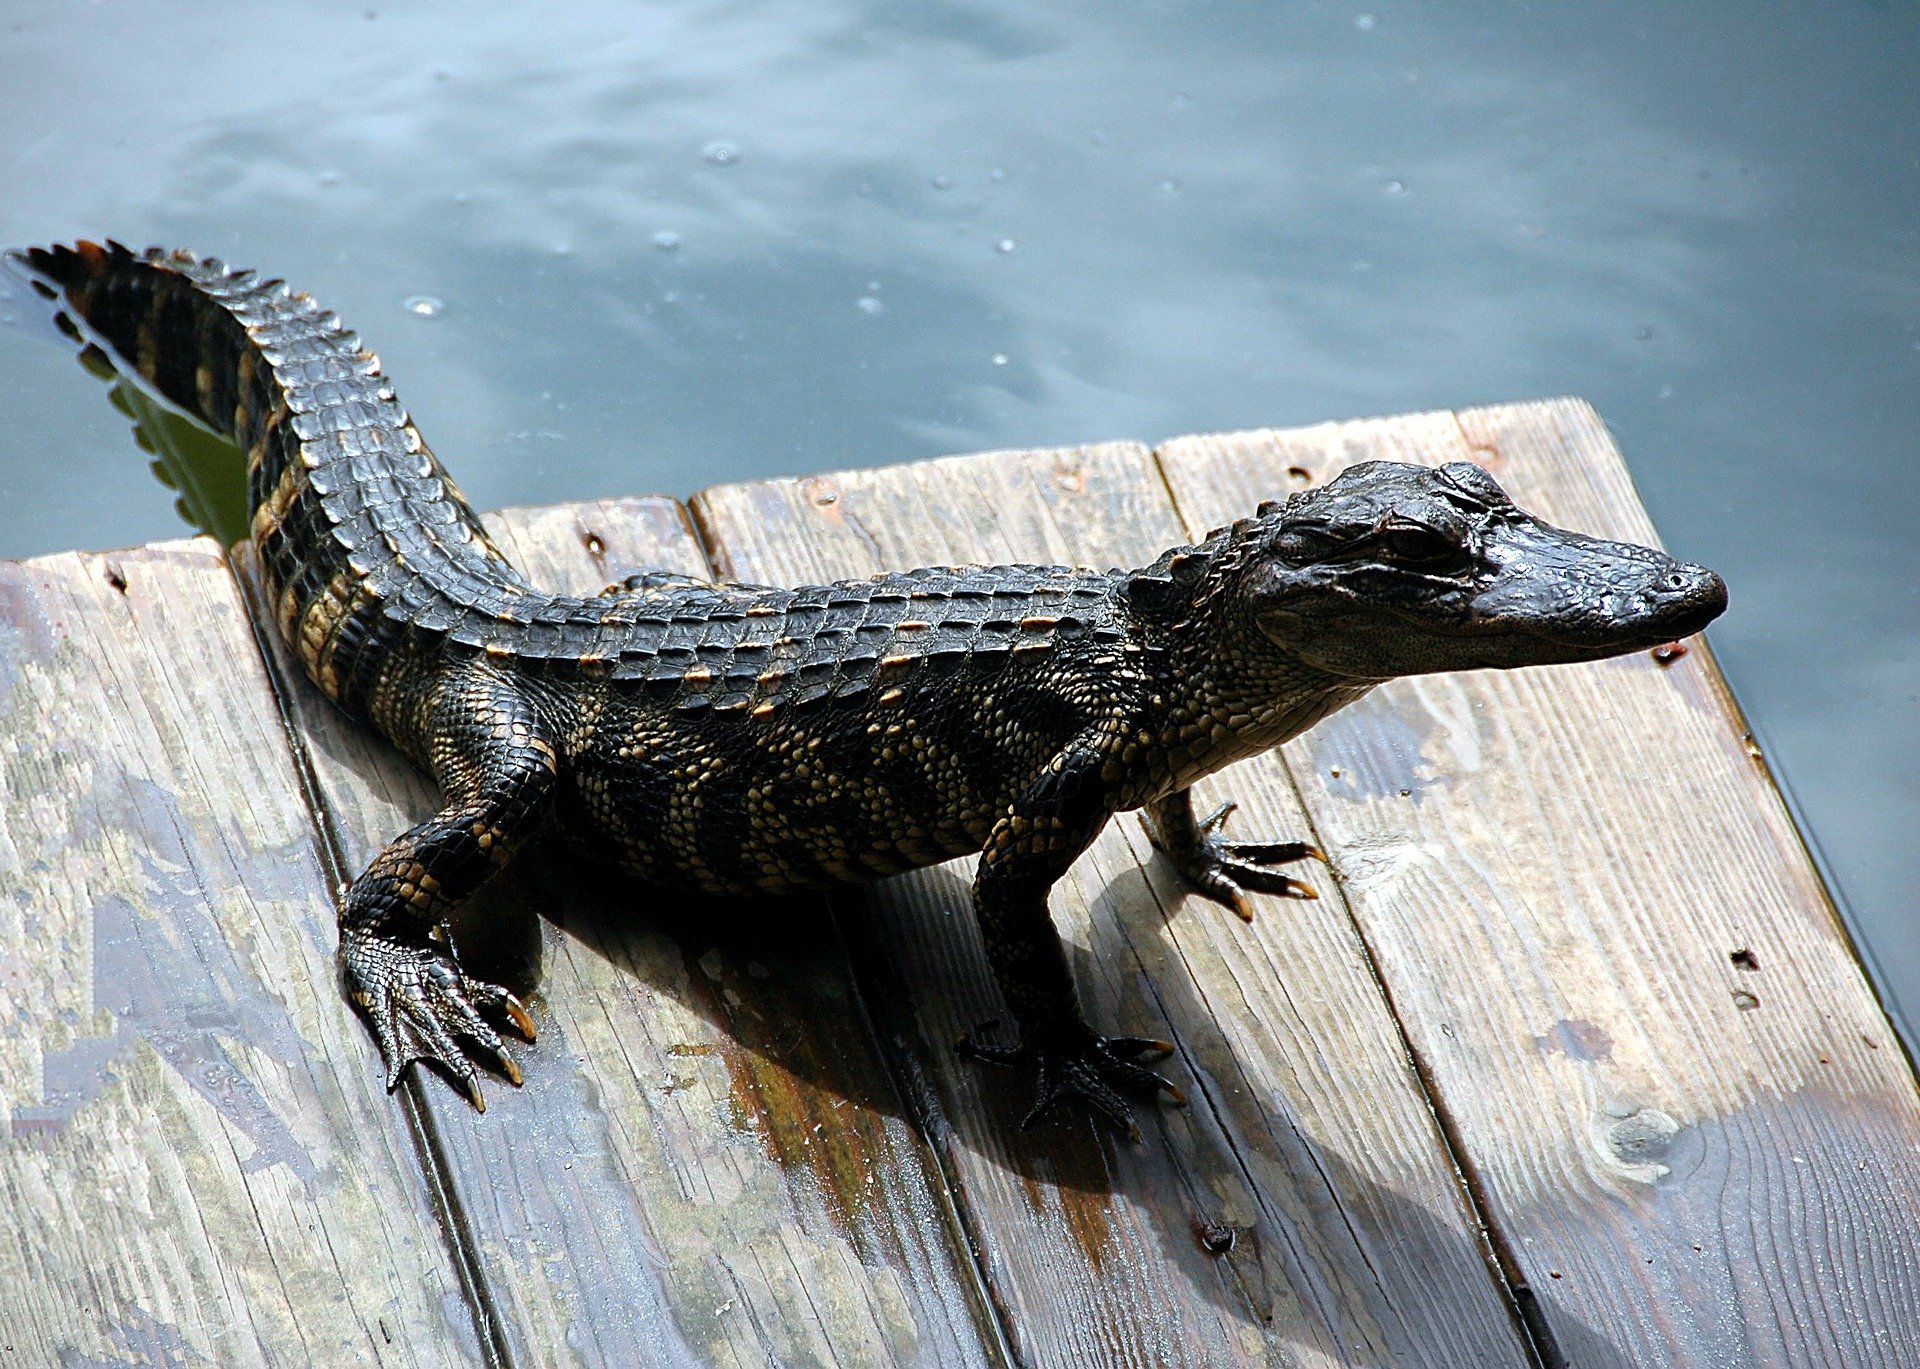 Alligator on a dock. | Source: Pixabay